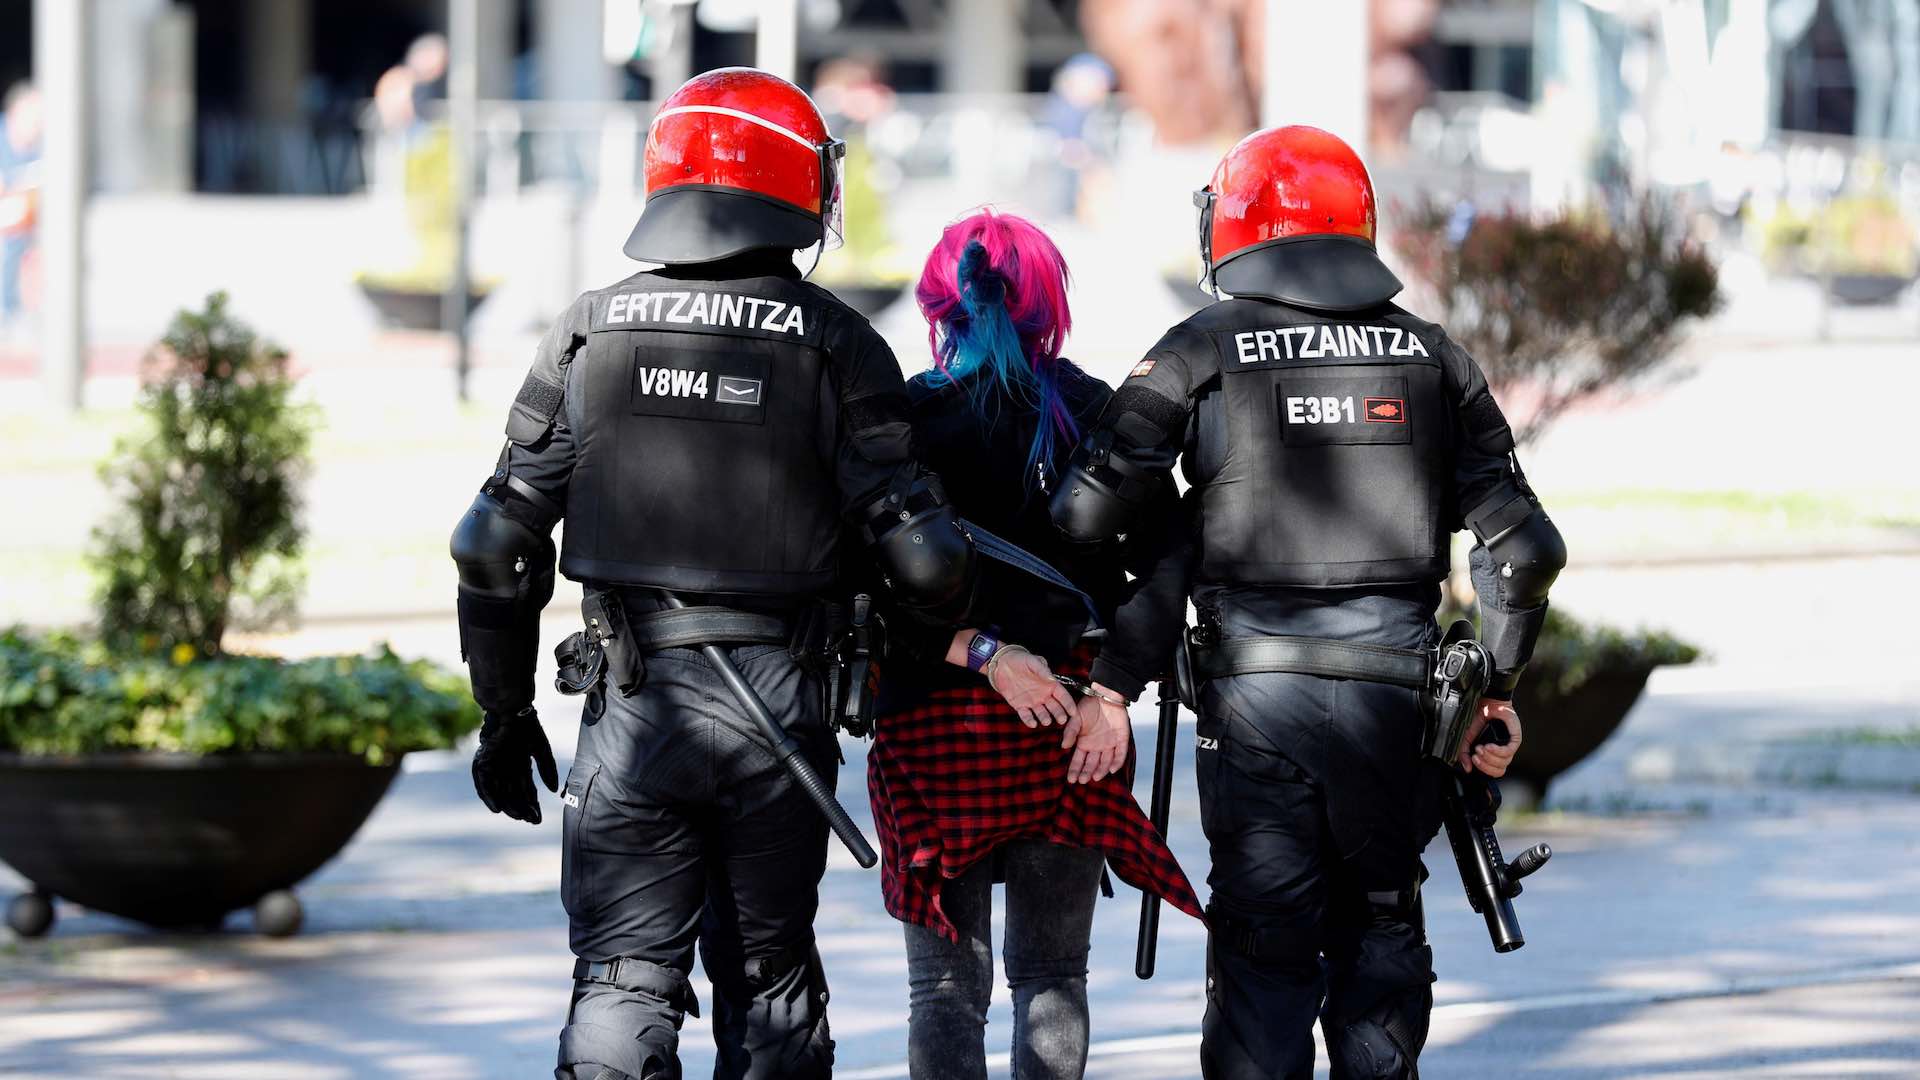 Cinco detenidos en los altercados durante la protesta contra Vox en Bilbao